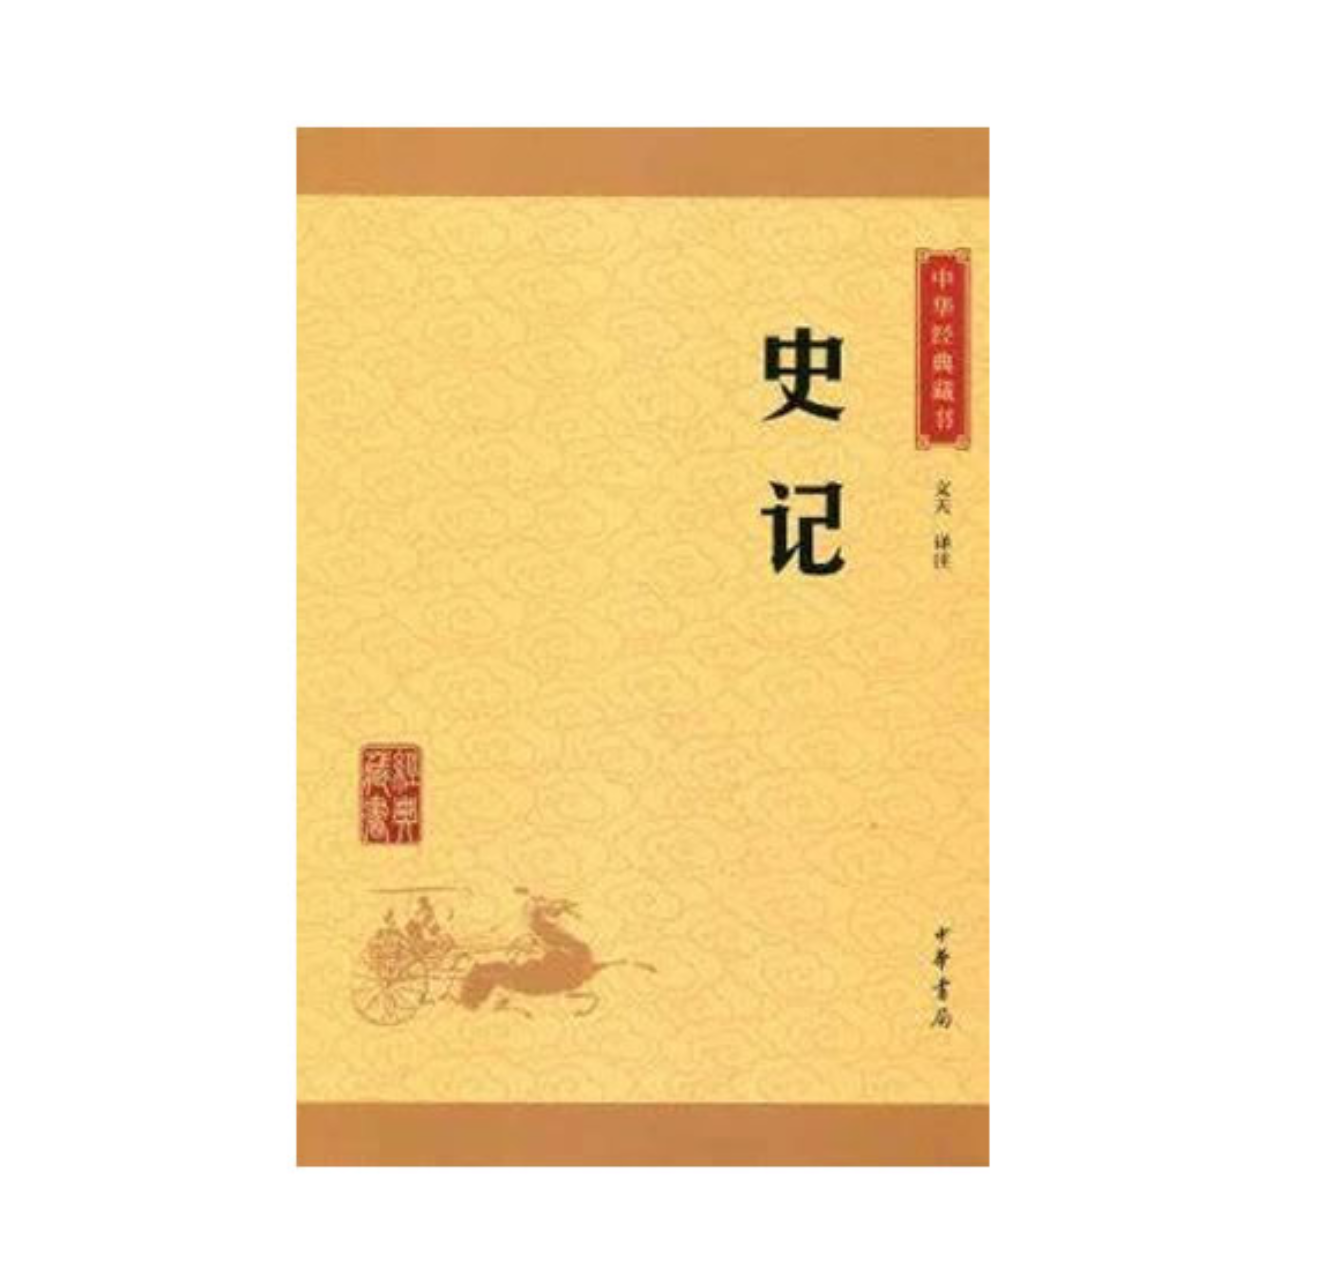 中华经典藏书(升级版):史记